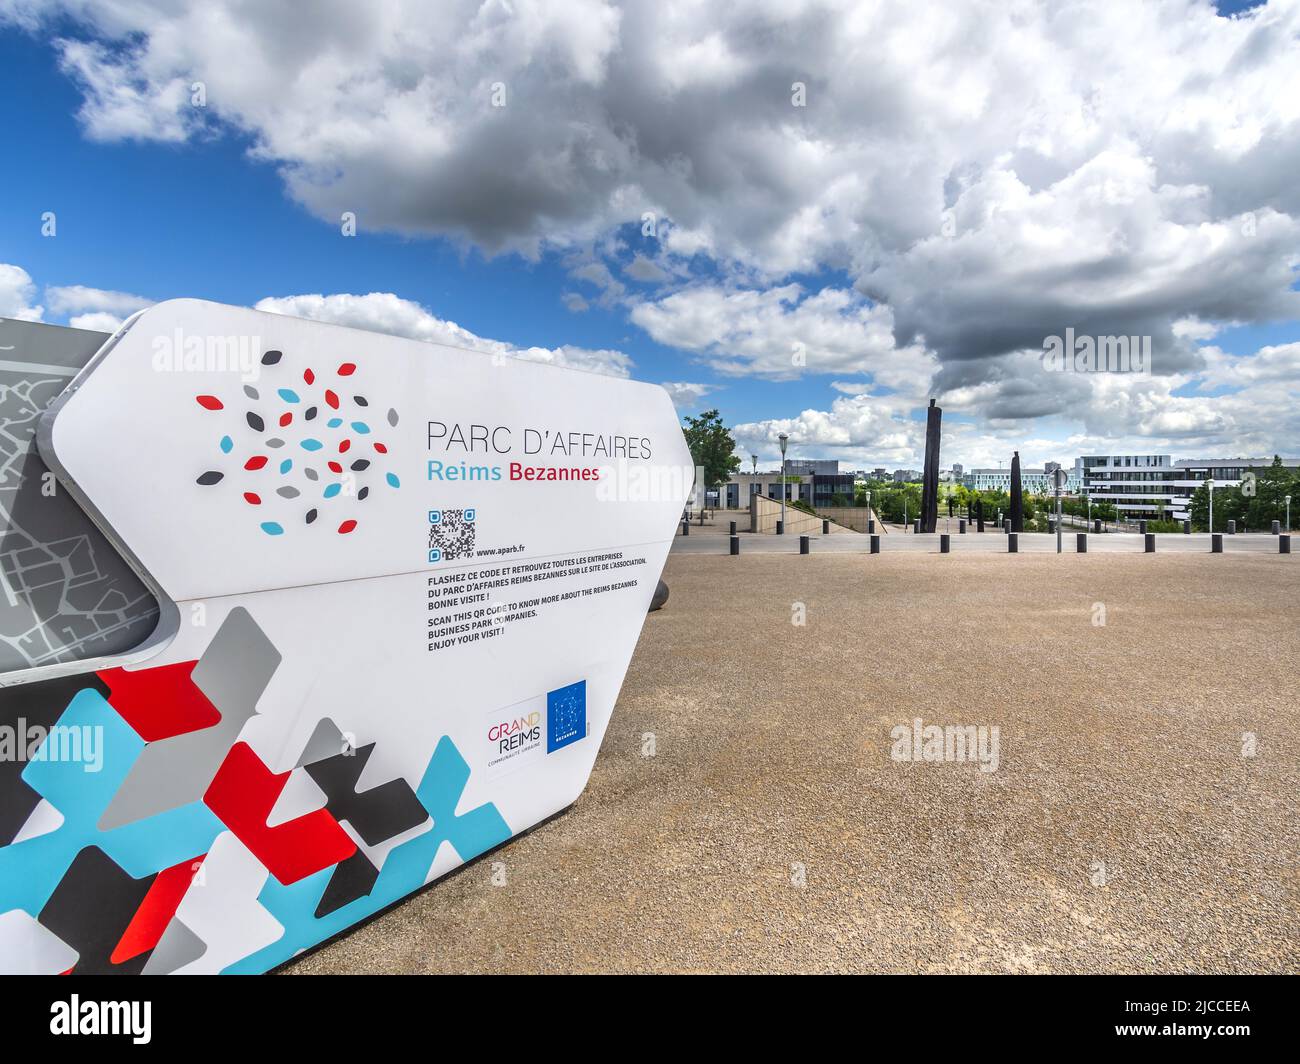 Panel de información para el parque empresarial Reims Bezannes cerca de la estación de tren TGV Gare de Champagne-Ardennes, Reims, Marne (51), Francia. Foto de stock